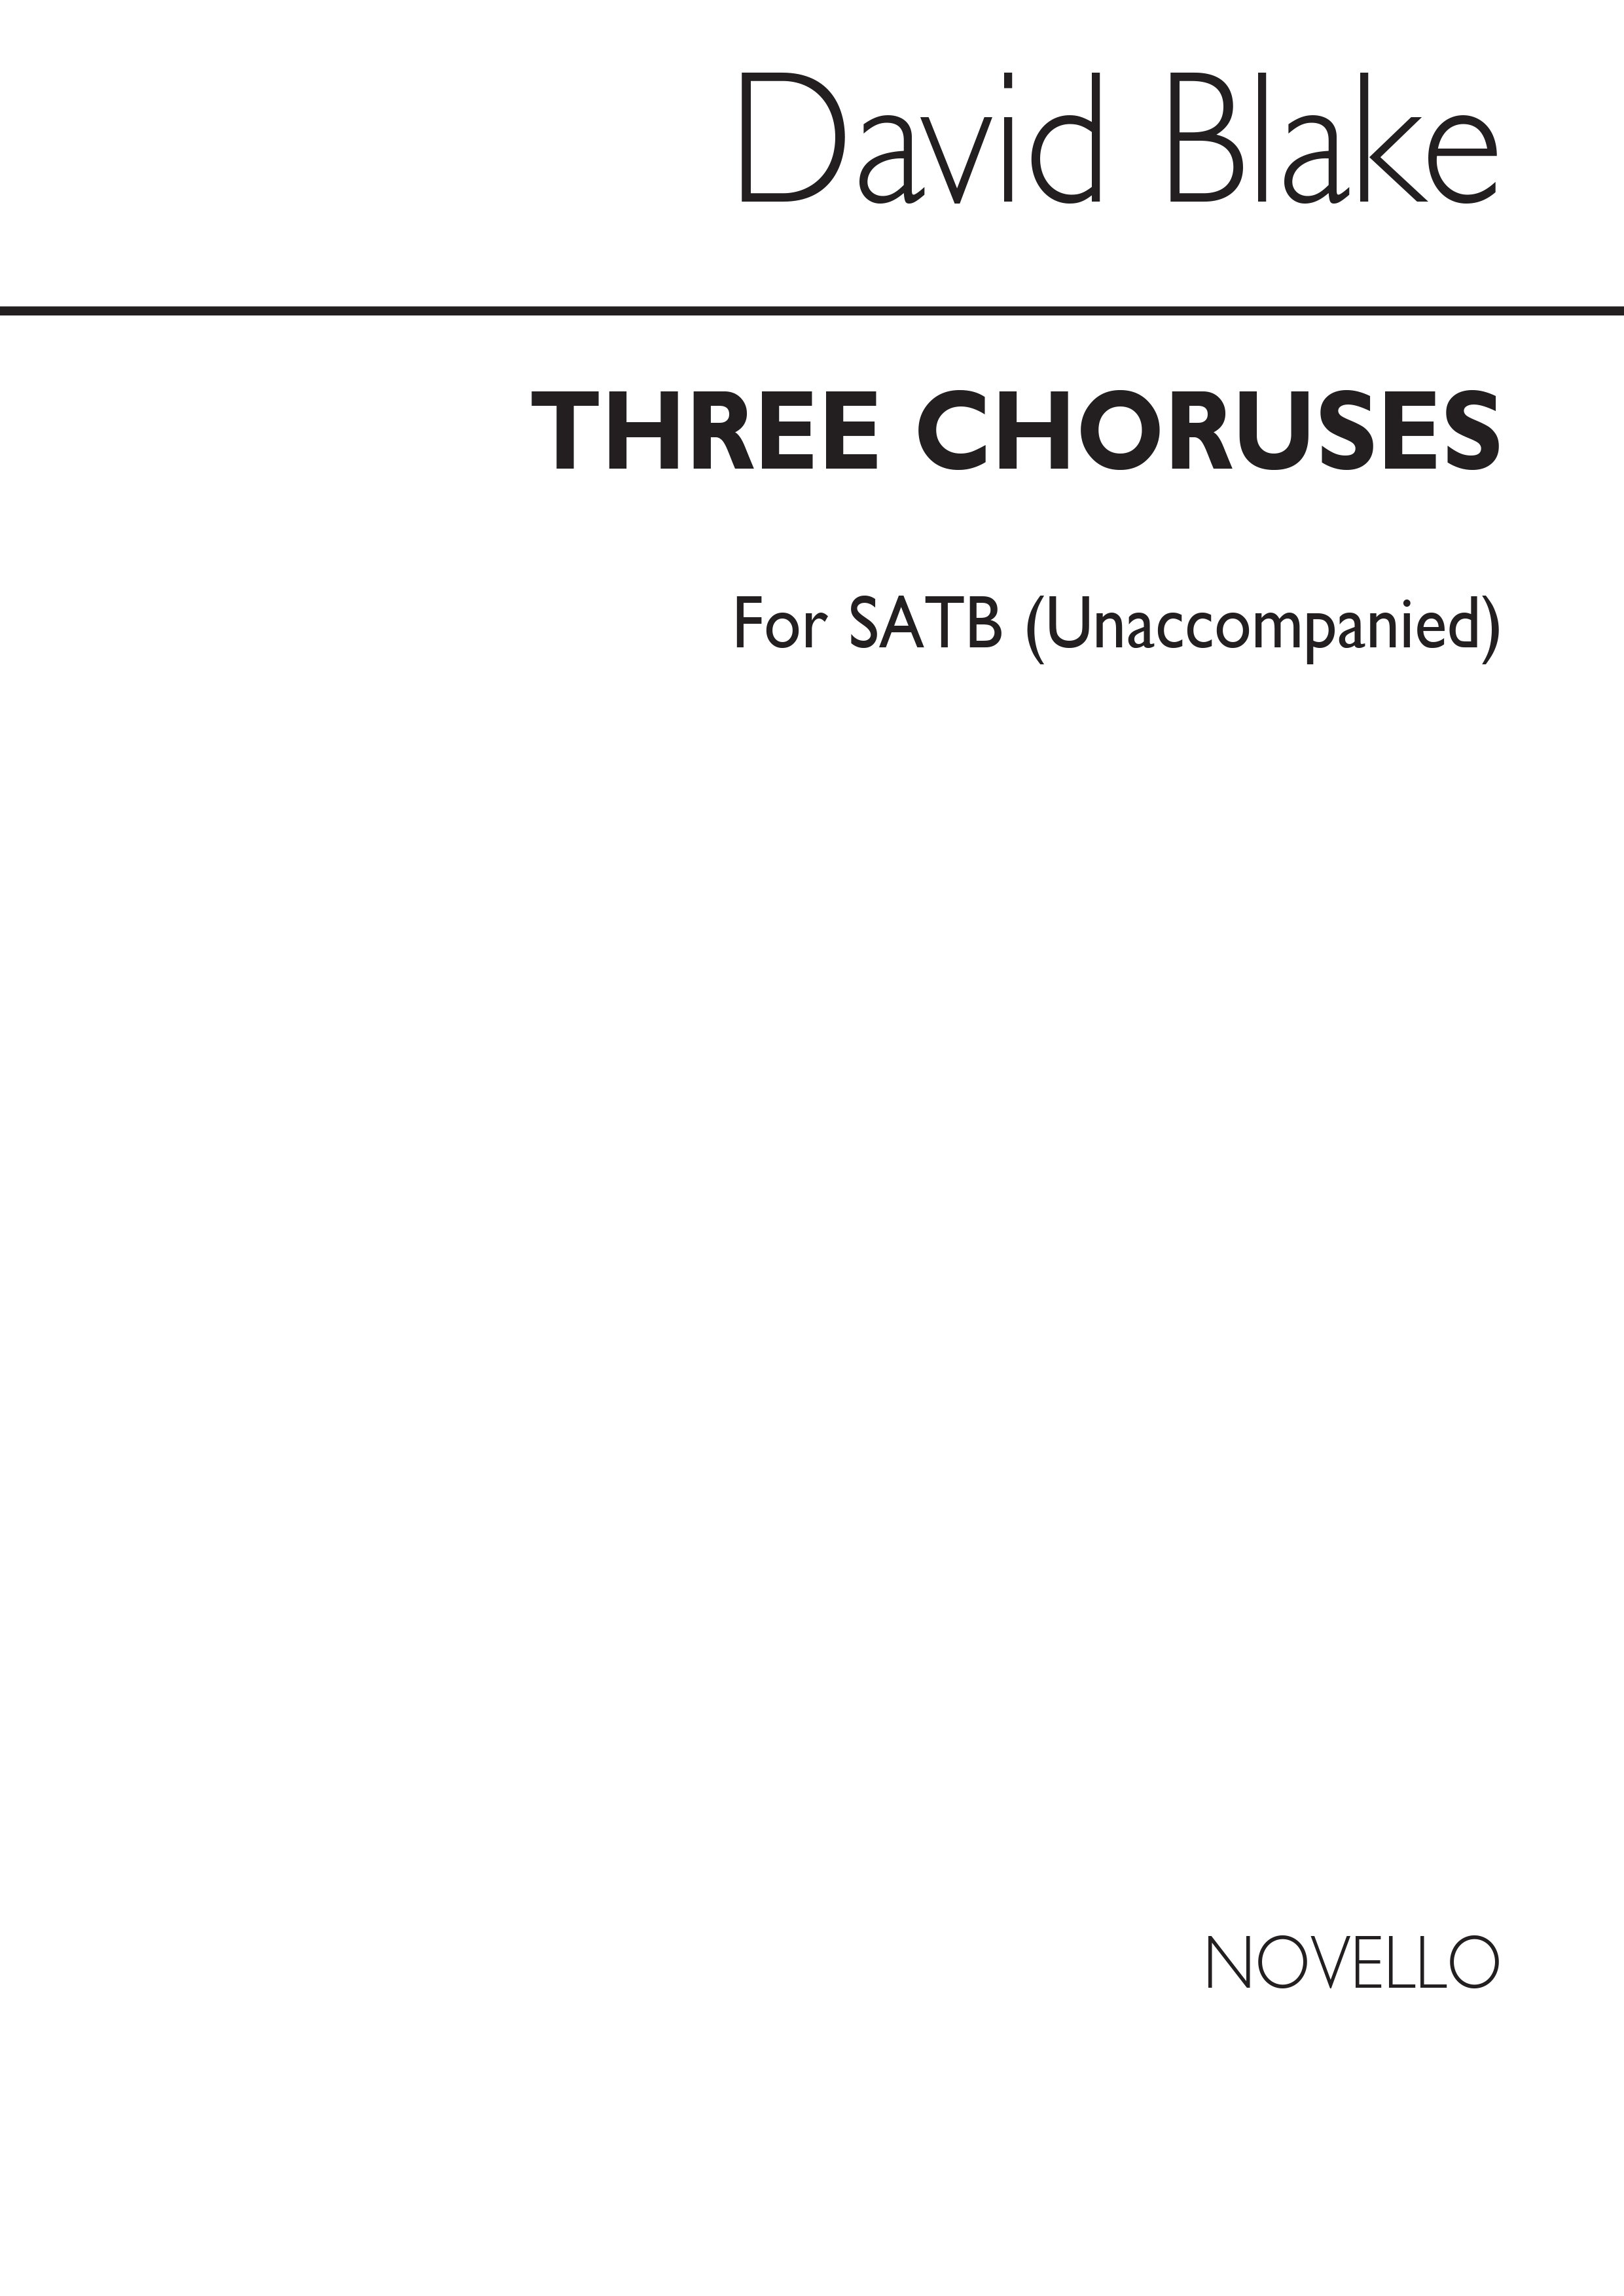 David Blake: Three Choruses Poems SATB Chorus